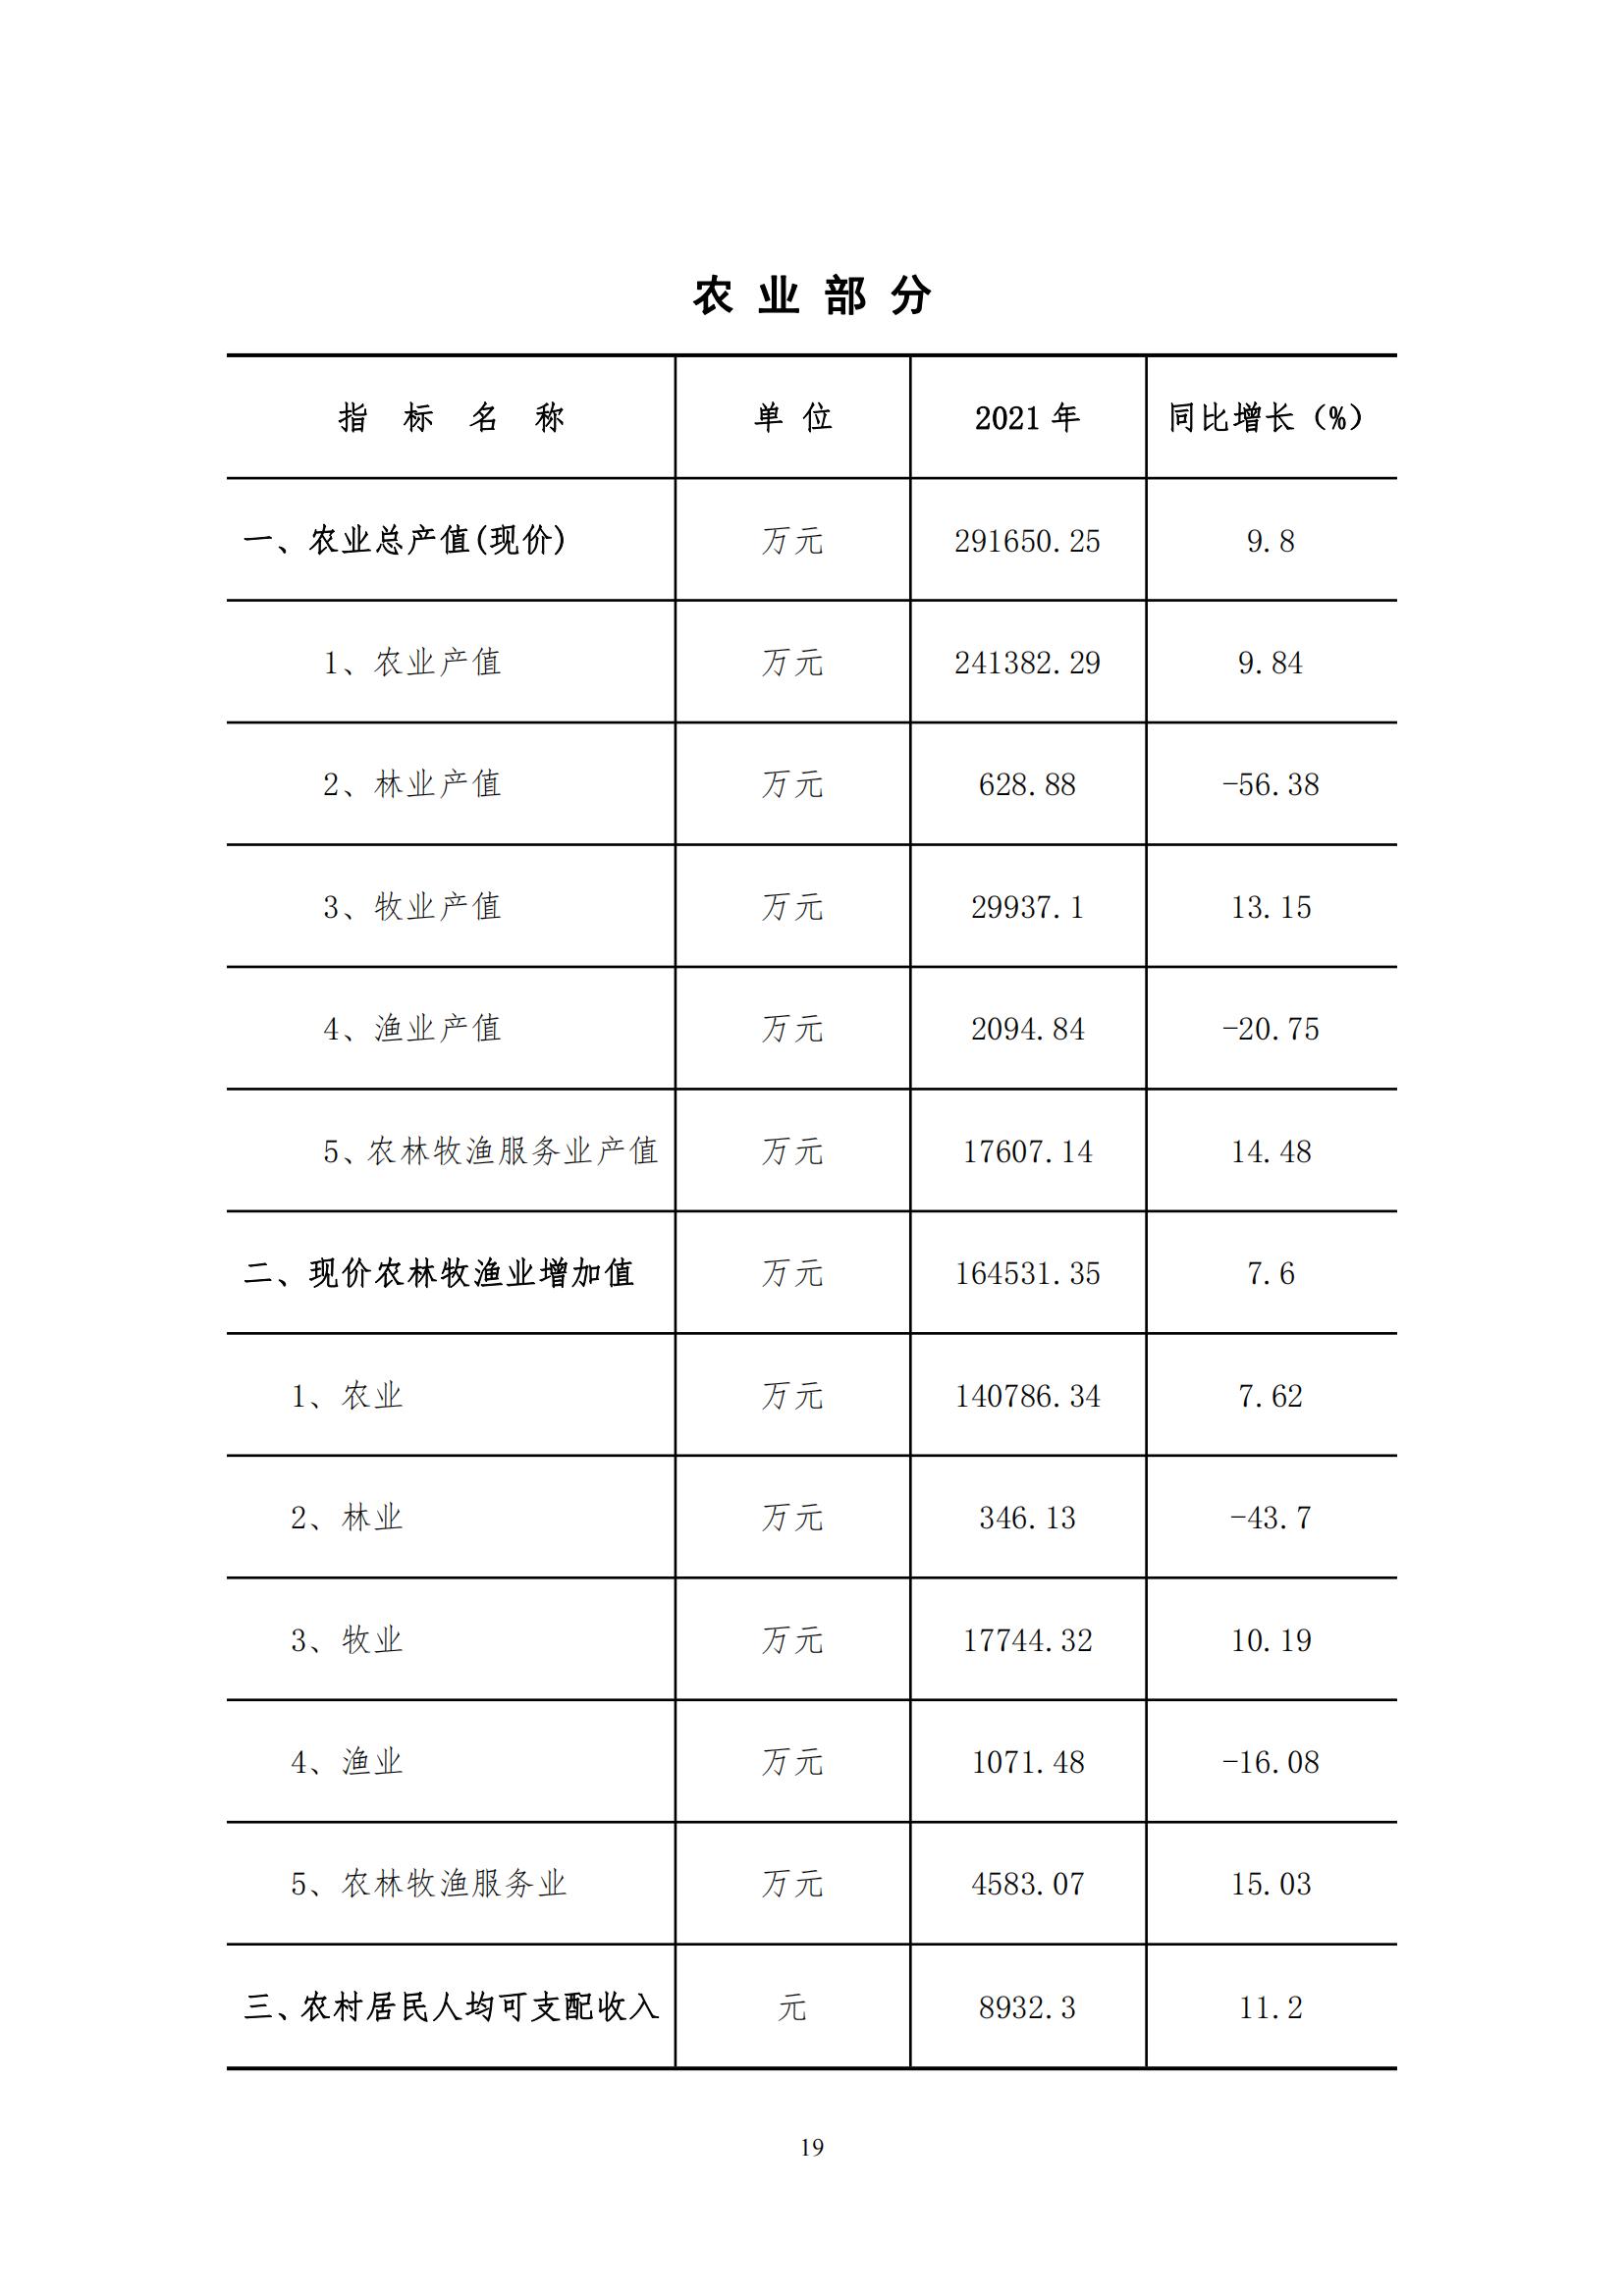 2021年永靖县国民经济和社会发展统计公报_18.jpg